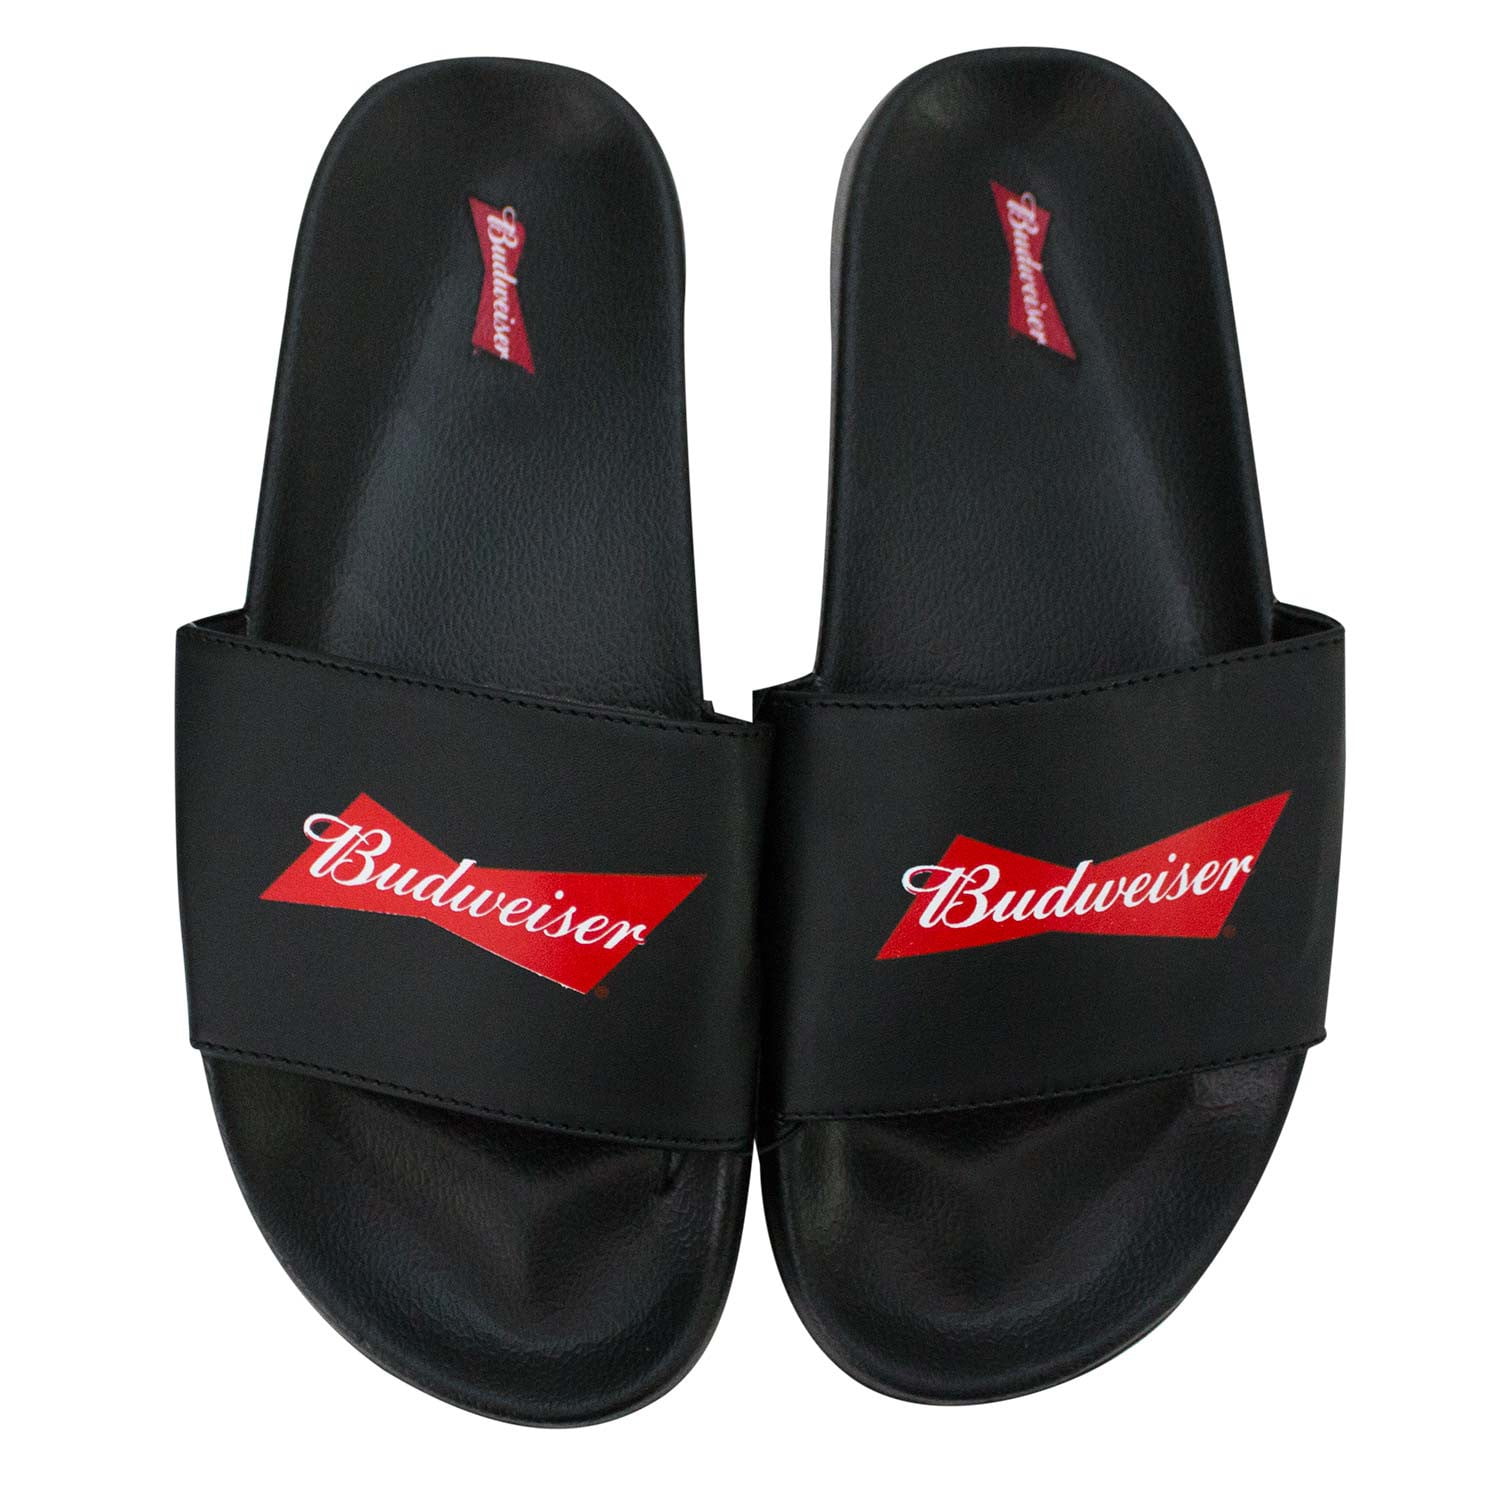 Budweiser Soccer Slides Men's Sandals-9 